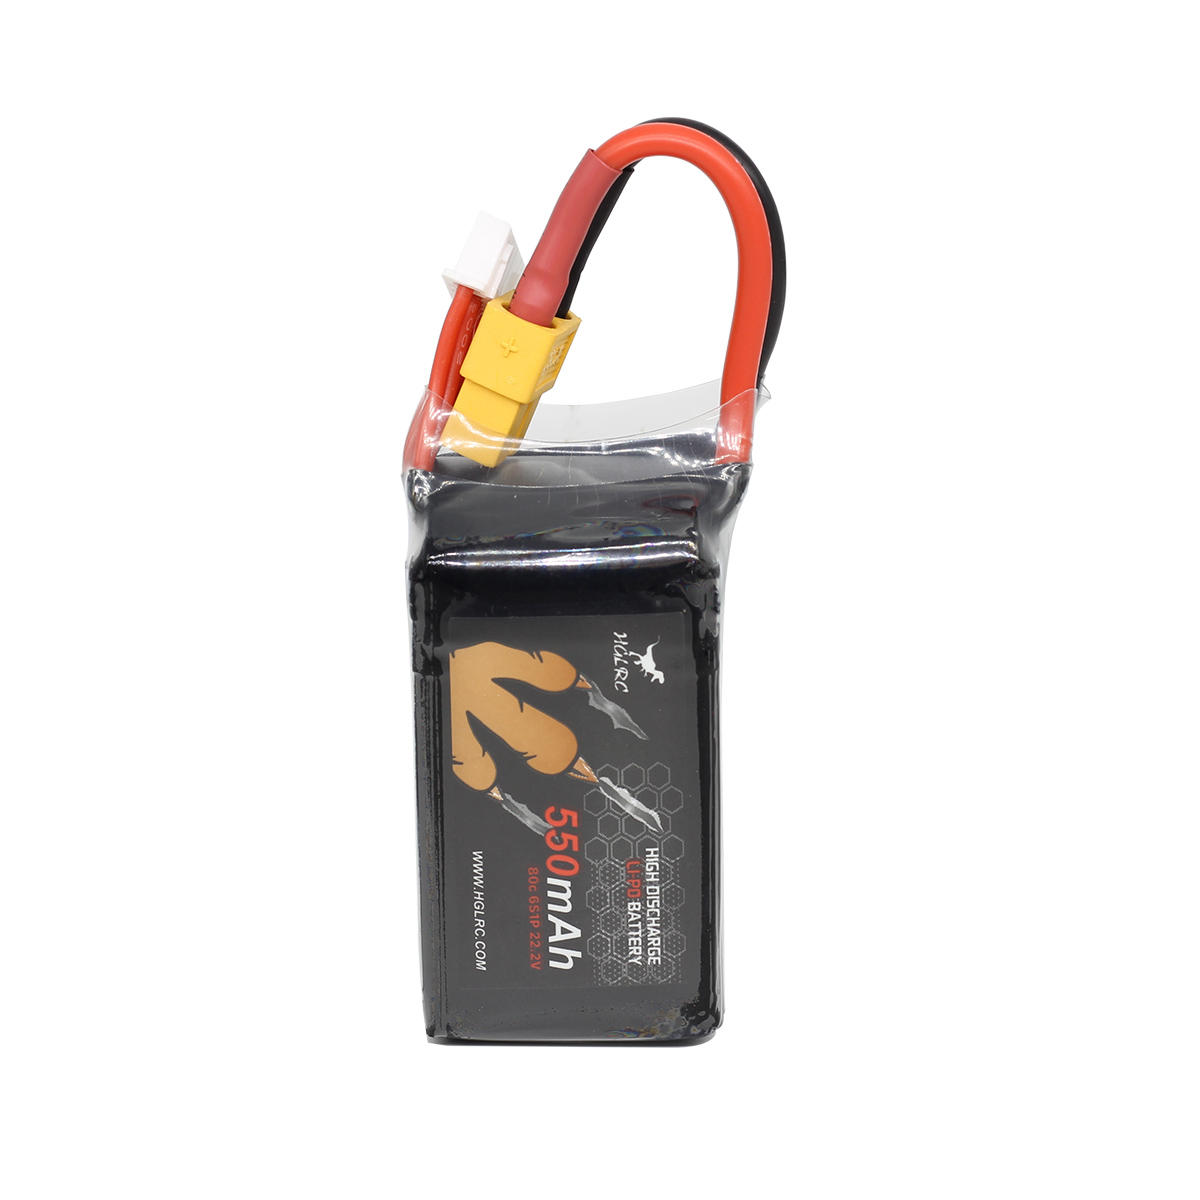 HGLRC 6S 22.2V 550mAh 80C LiPo Batterij XT60 met 2x batterij strap 75 * 32 * 50mm 115.1g voor Diaton